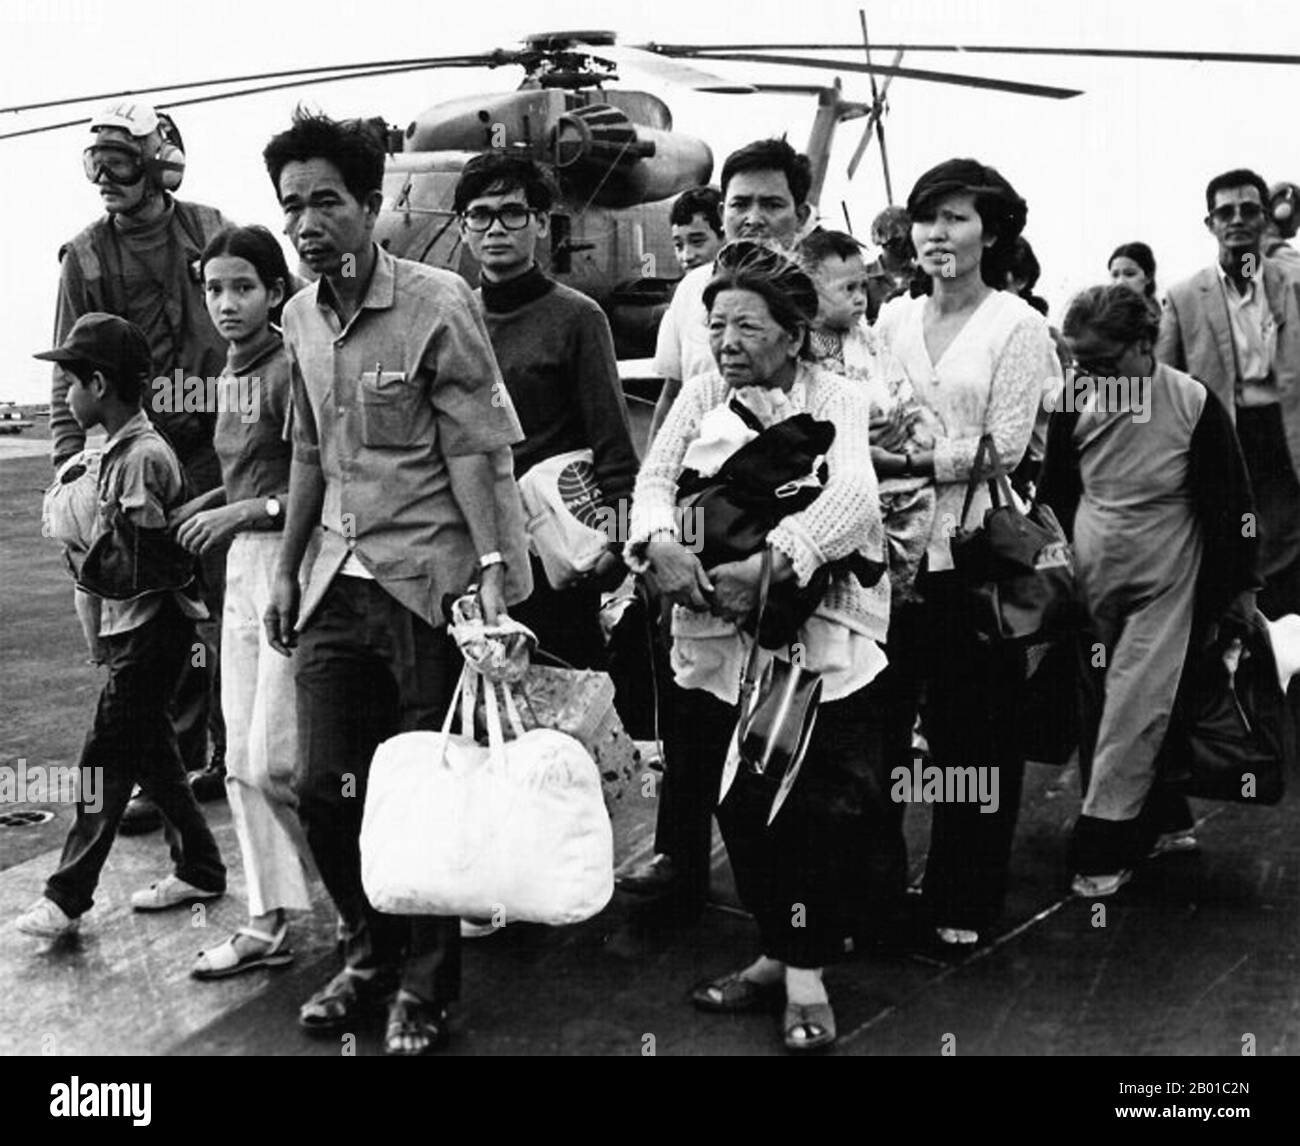 Vietnam: Flüchtlinge aus der besiegten Republik Vietnam werden im April 1975 zum Flugdeck eines US-amerikanischen Frachtführers im Südchinesischen Meer evakuiert. Die Operation Frequent Wind war die Evakuierung amerikanischer Zivilisten und gefährdete Vietnamesen aus Saigon, Südvietnam, am 29-30. April 1975 in den letzten Tagen des Vietnamkrieges mit einem Hubschrauber. Mehr als 7.000 Menschen wurden aus verschiedenen Orten in Saigon evakuiert, und der Luftbrücke hinterließ eine Reihe von bleibenden Bildern. Die Vorbereitungen für die Luftbrücke bestanden bereits als Standardverfahren für amerikanische Botschaften. Stockfoto